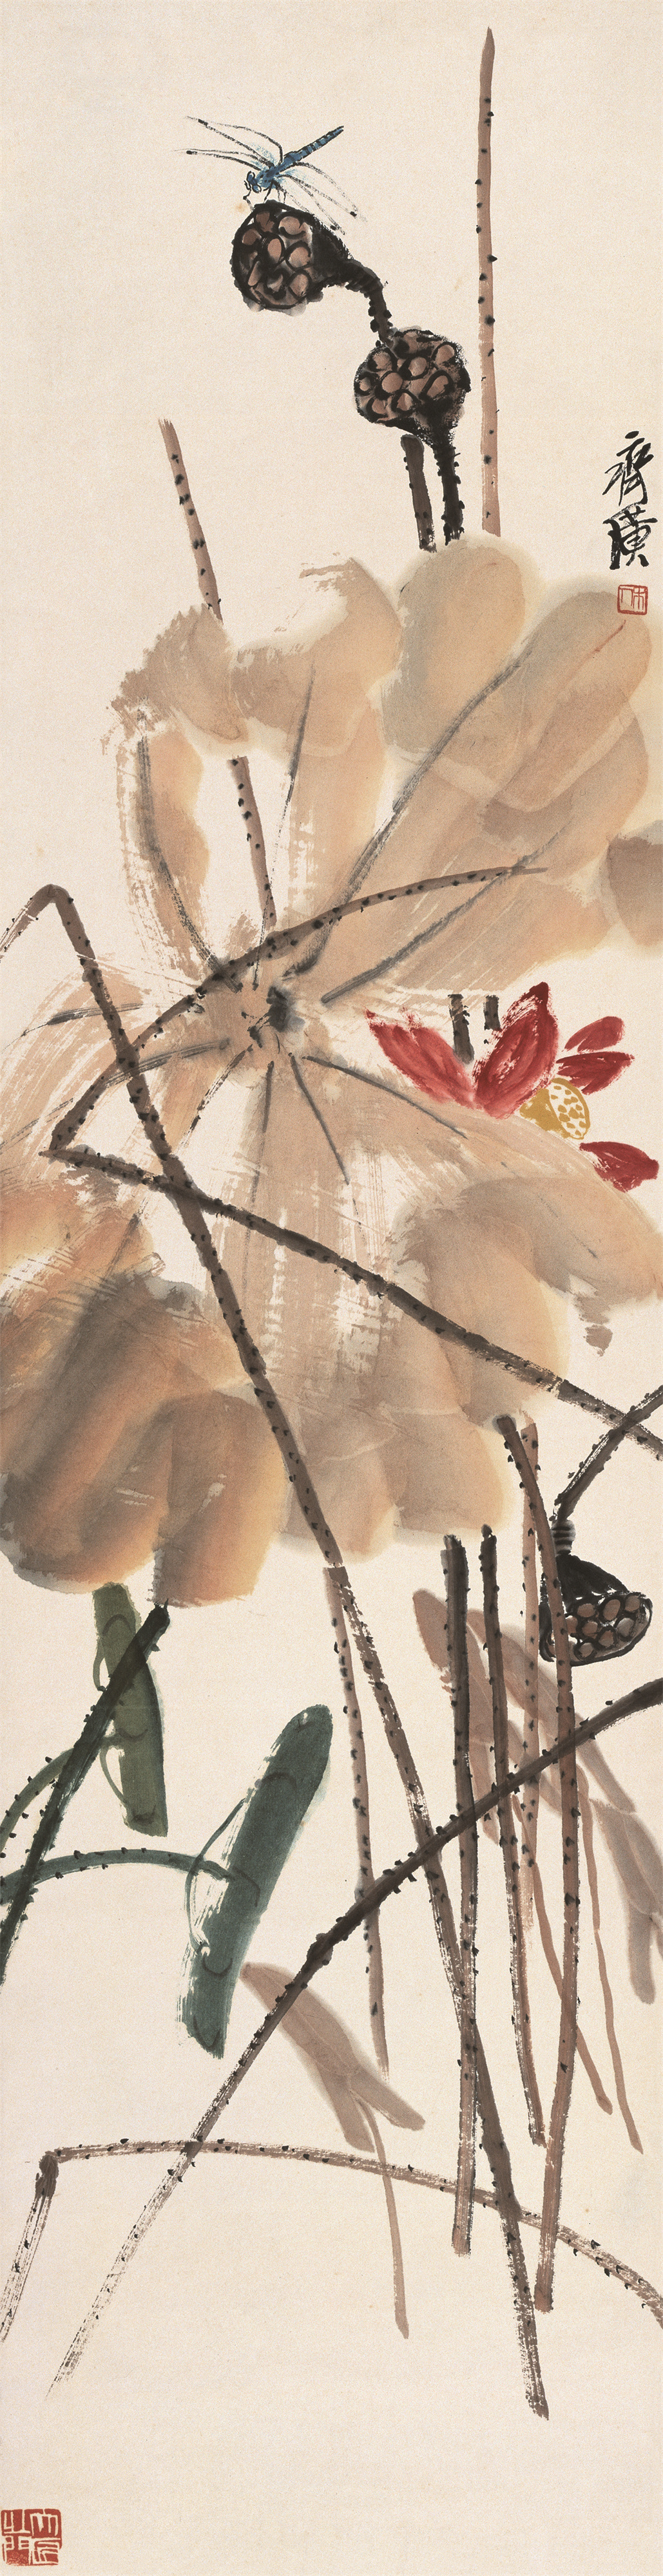 北京画院藏齐白石精品展丨《荷花蜻蜓》